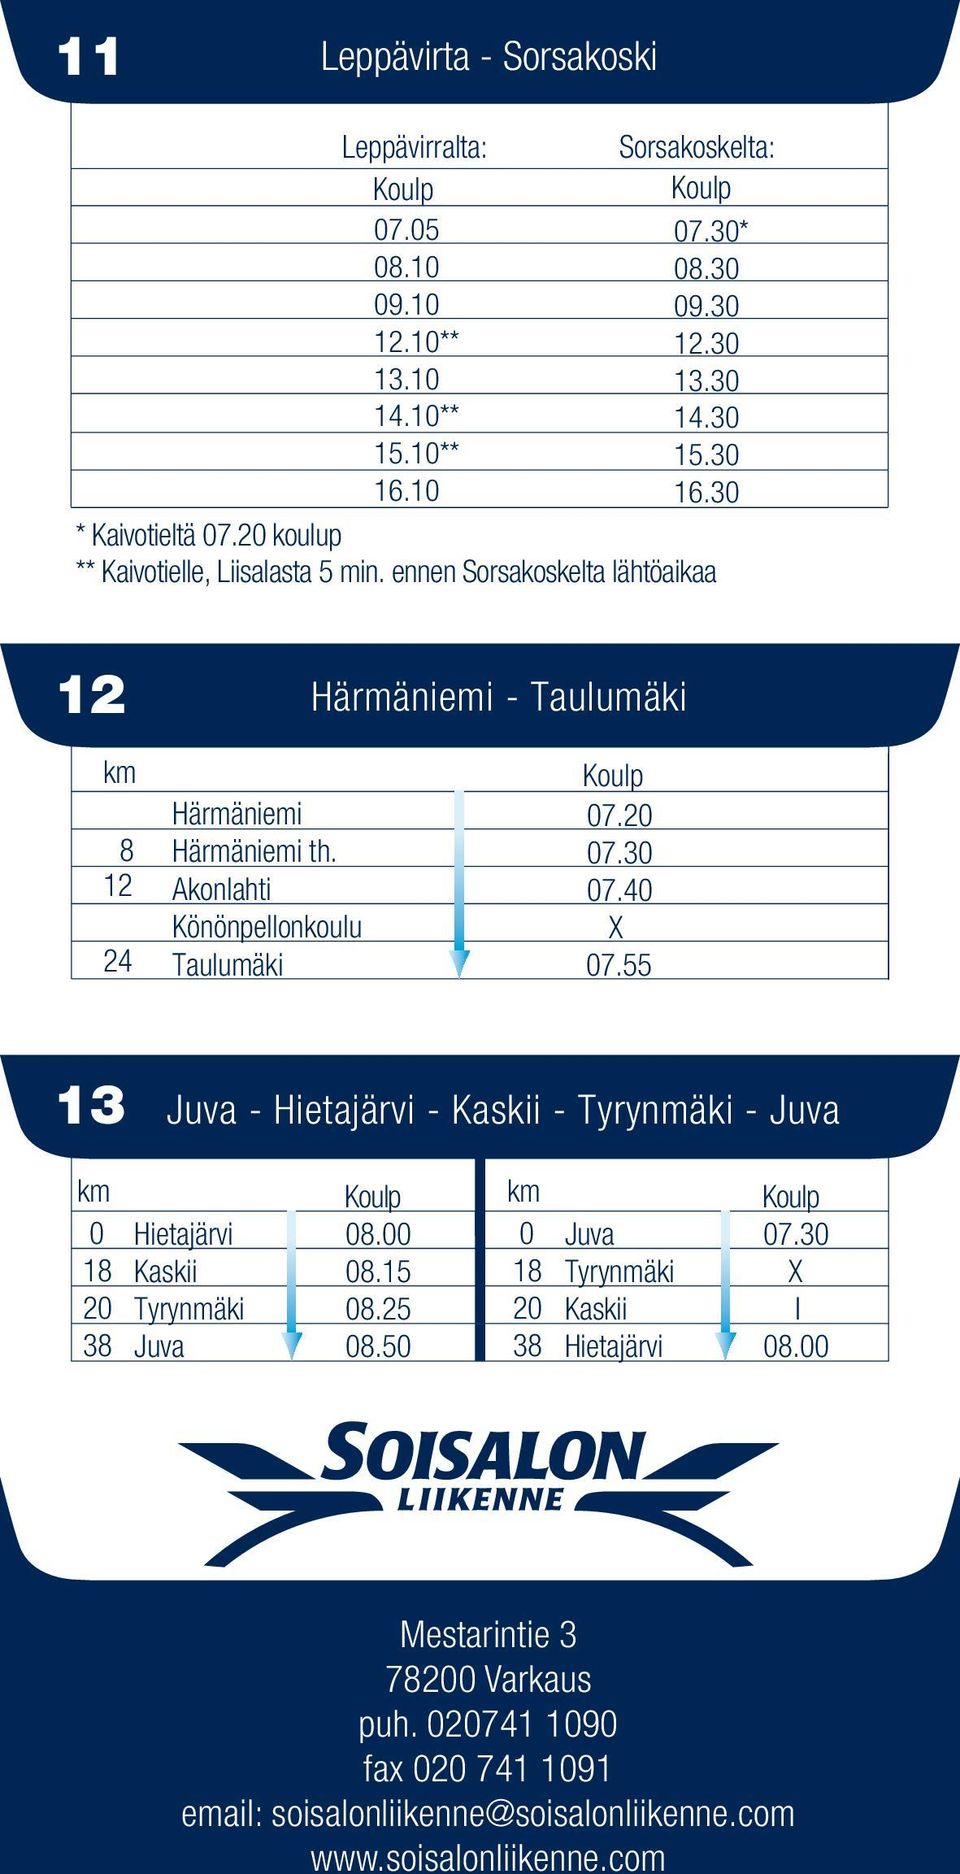 Akonahti Könönpeonkouu Tauumäki 07.20 07.30 07.40 07.55 13 - Hietajärvi - Kaskii - Tyrynmäki - 0 18 20 38 Hietajärvi Kaskii Tyrynmäki 08.00 08.15 08.